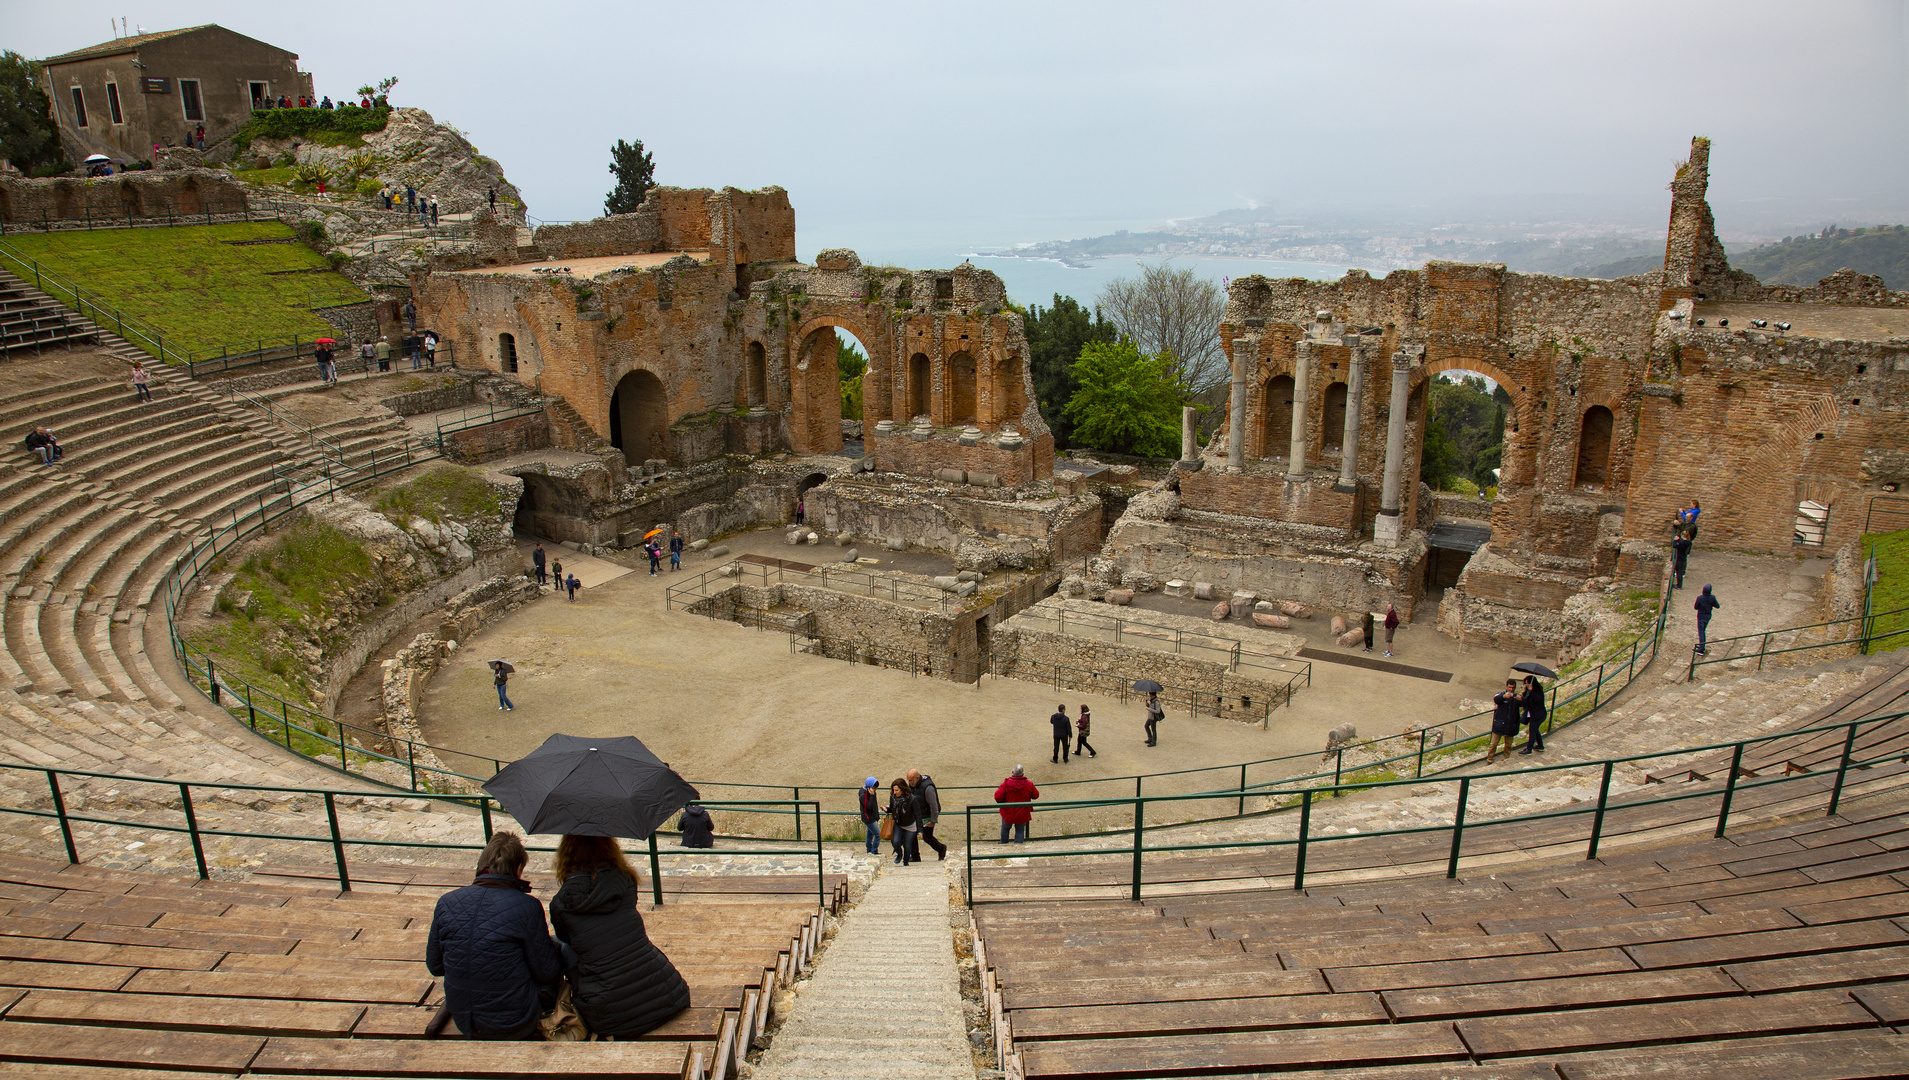 Das Amphitheater von Taormina